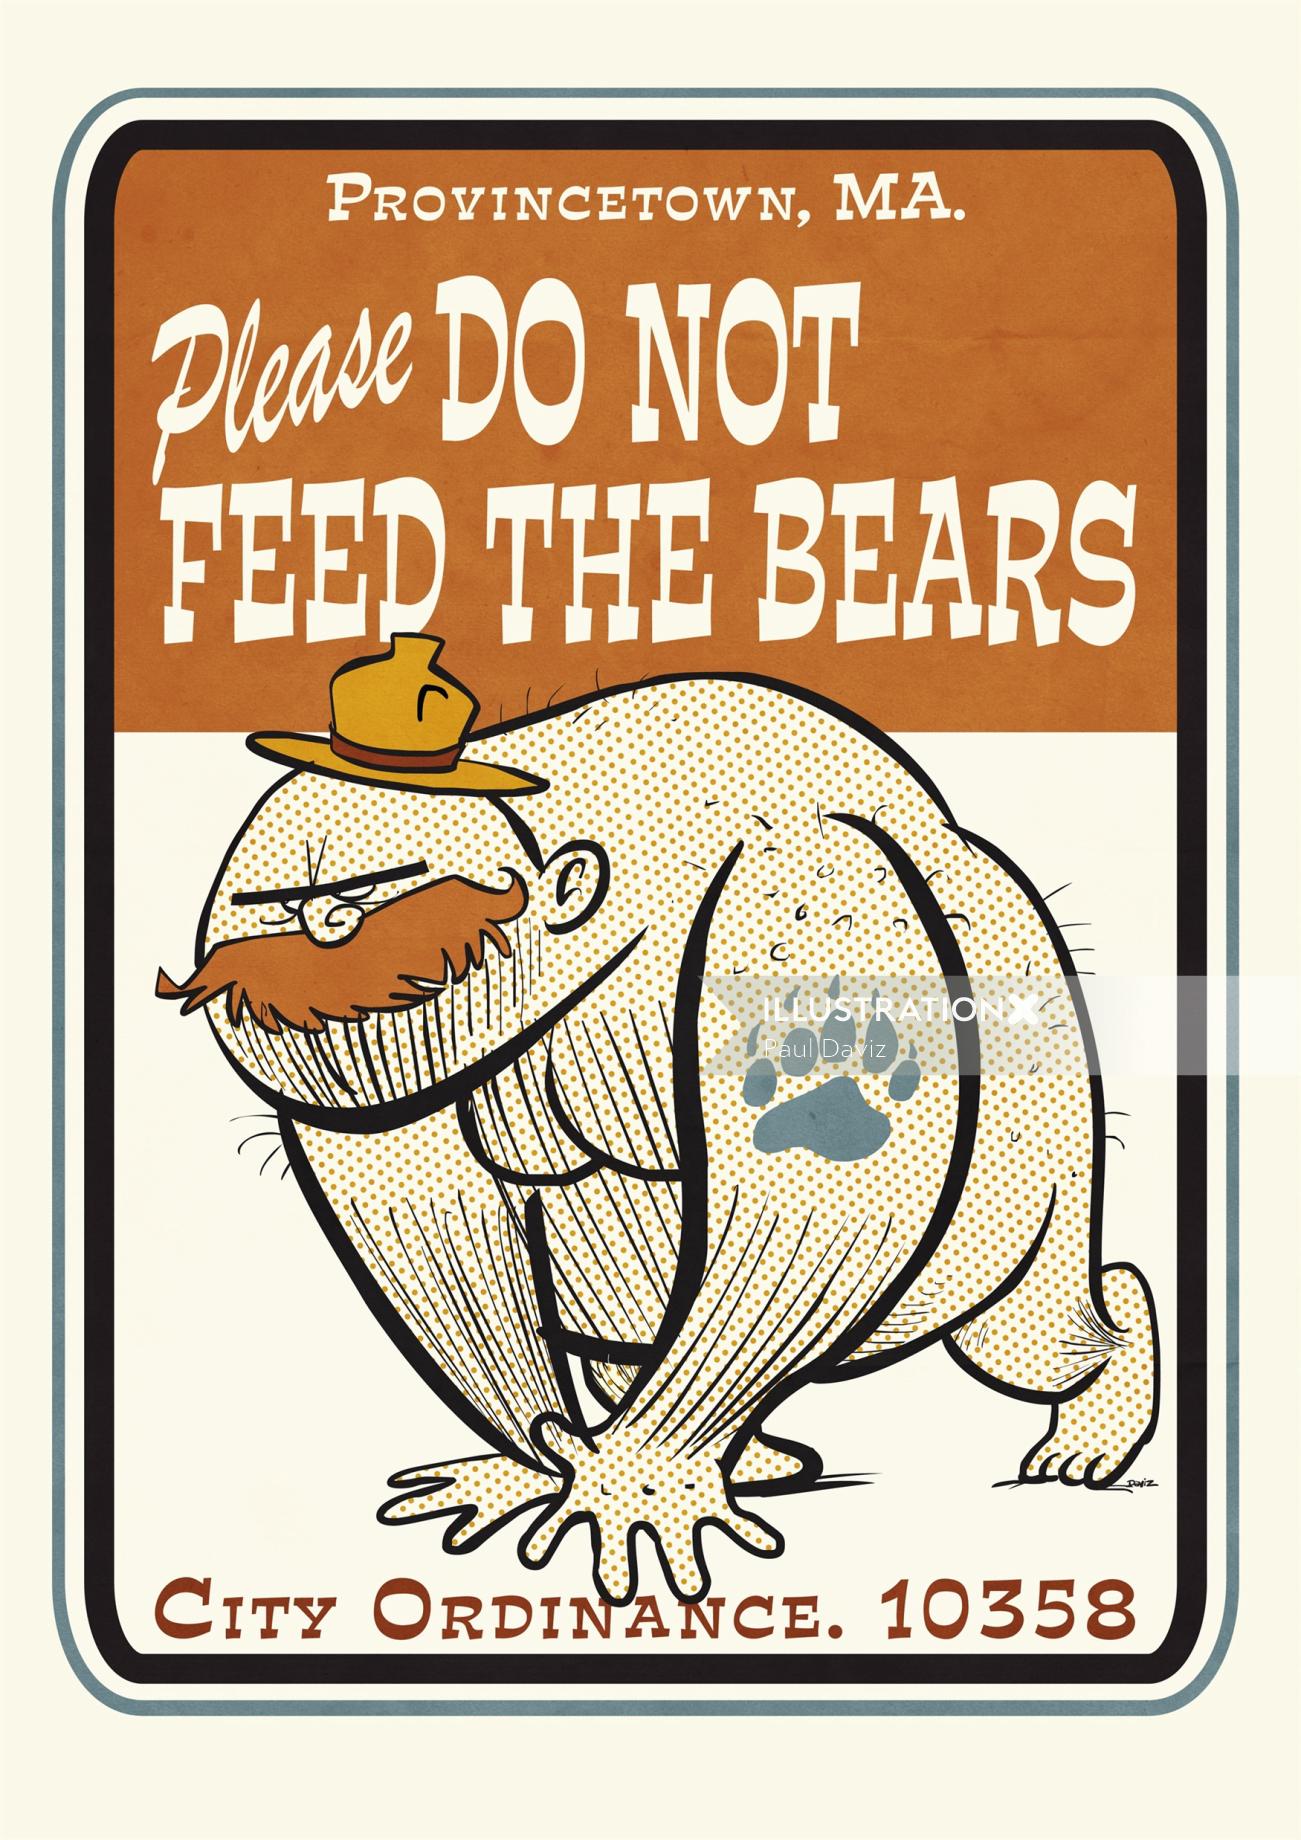 Letras por favor, não alimente os ursos